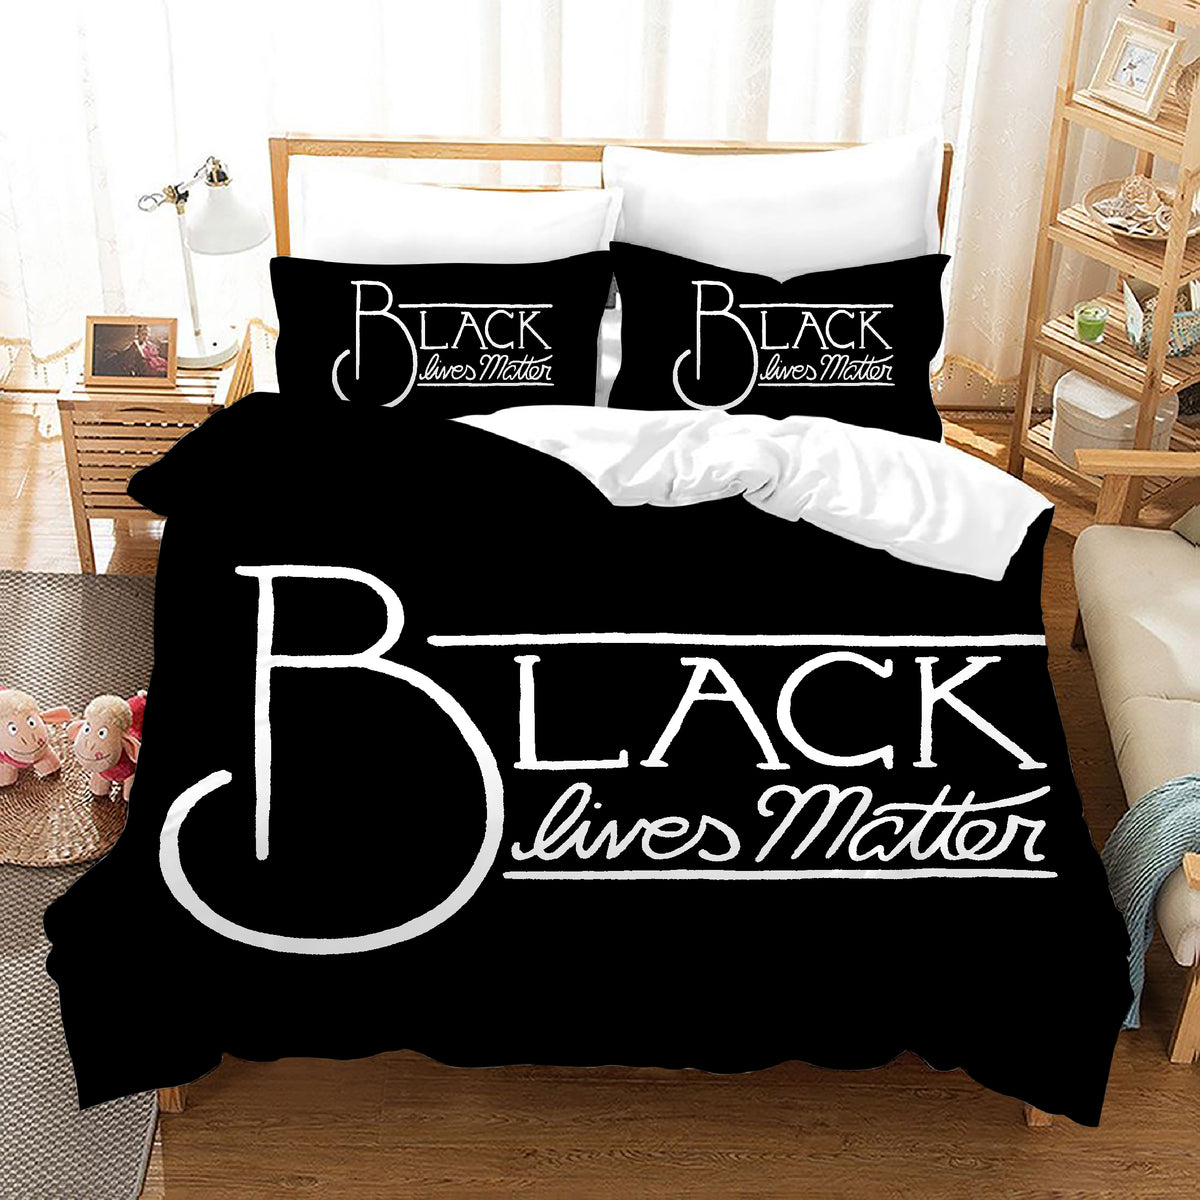 Black Lives Matter #14 Duvet Cover Quilt Cover Pillowcase Bedding Set Bed Linen Home Bedroom Decor